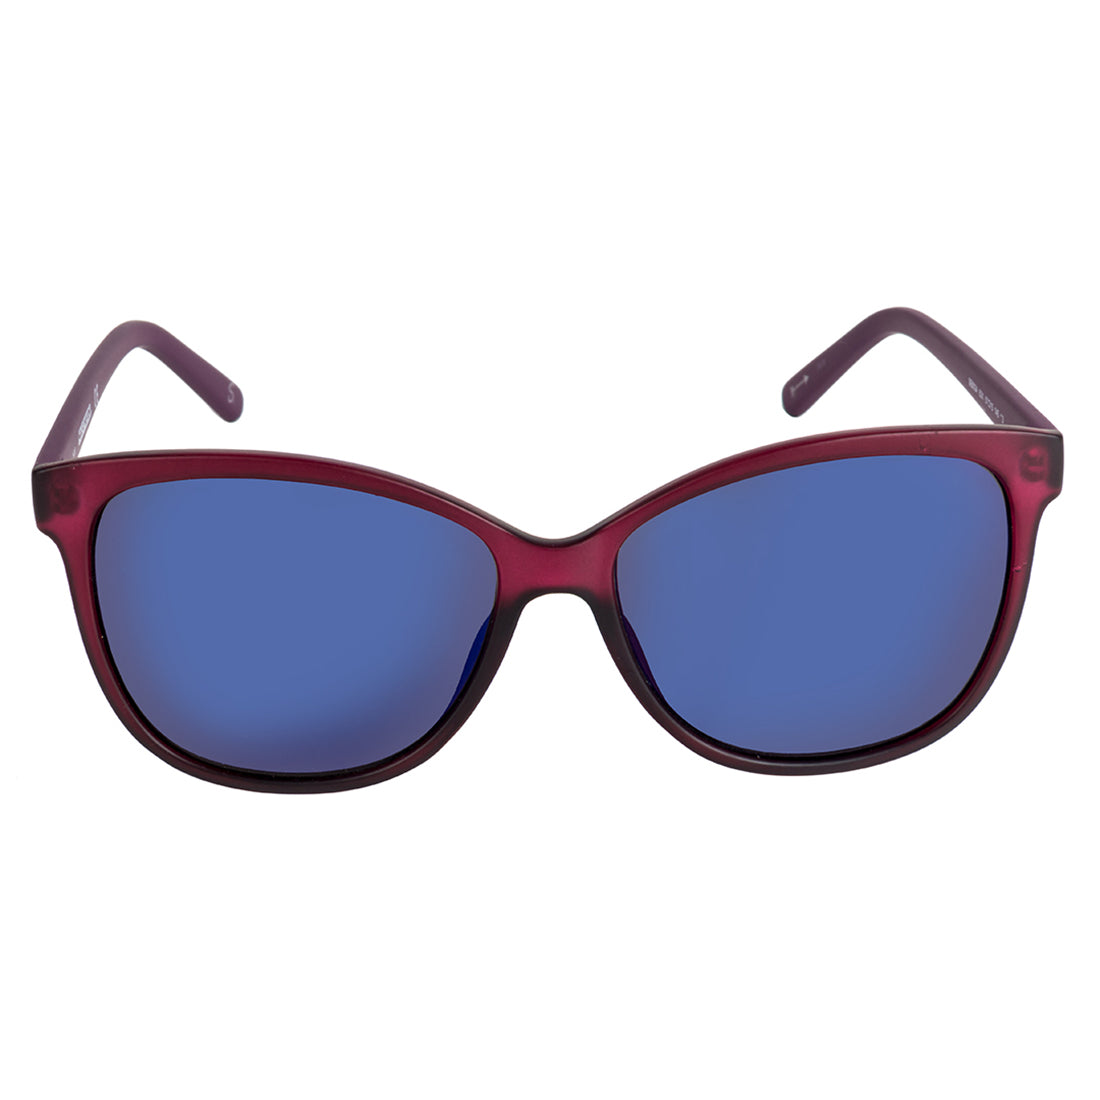 Skechers Irregular Sunglass with Blue Lens for Women